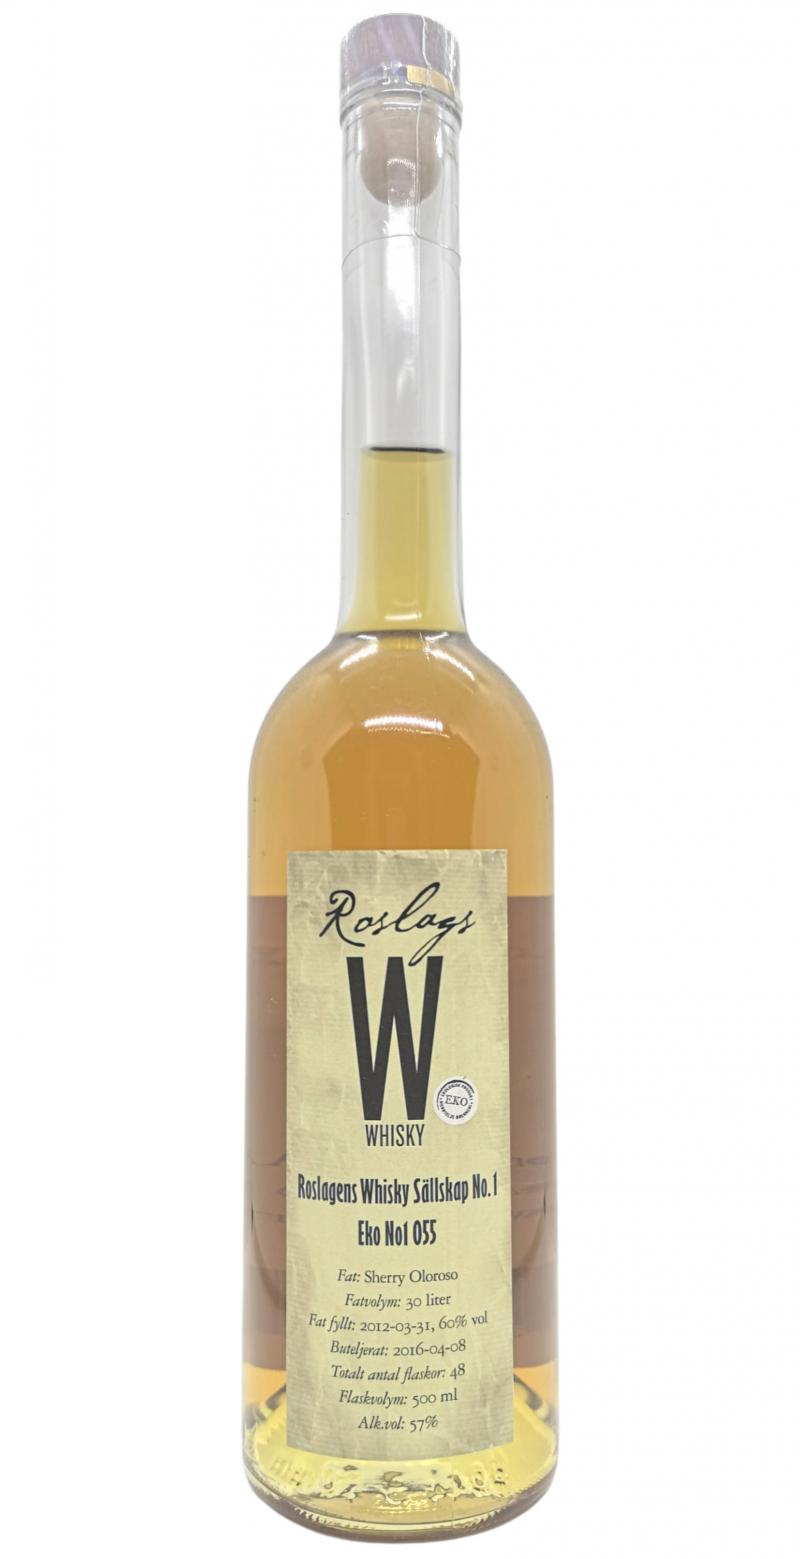 Roslags 2012 Privatfat Sherry Oloroso #055 Roslagens Whisky Sallskap 57% 500ml